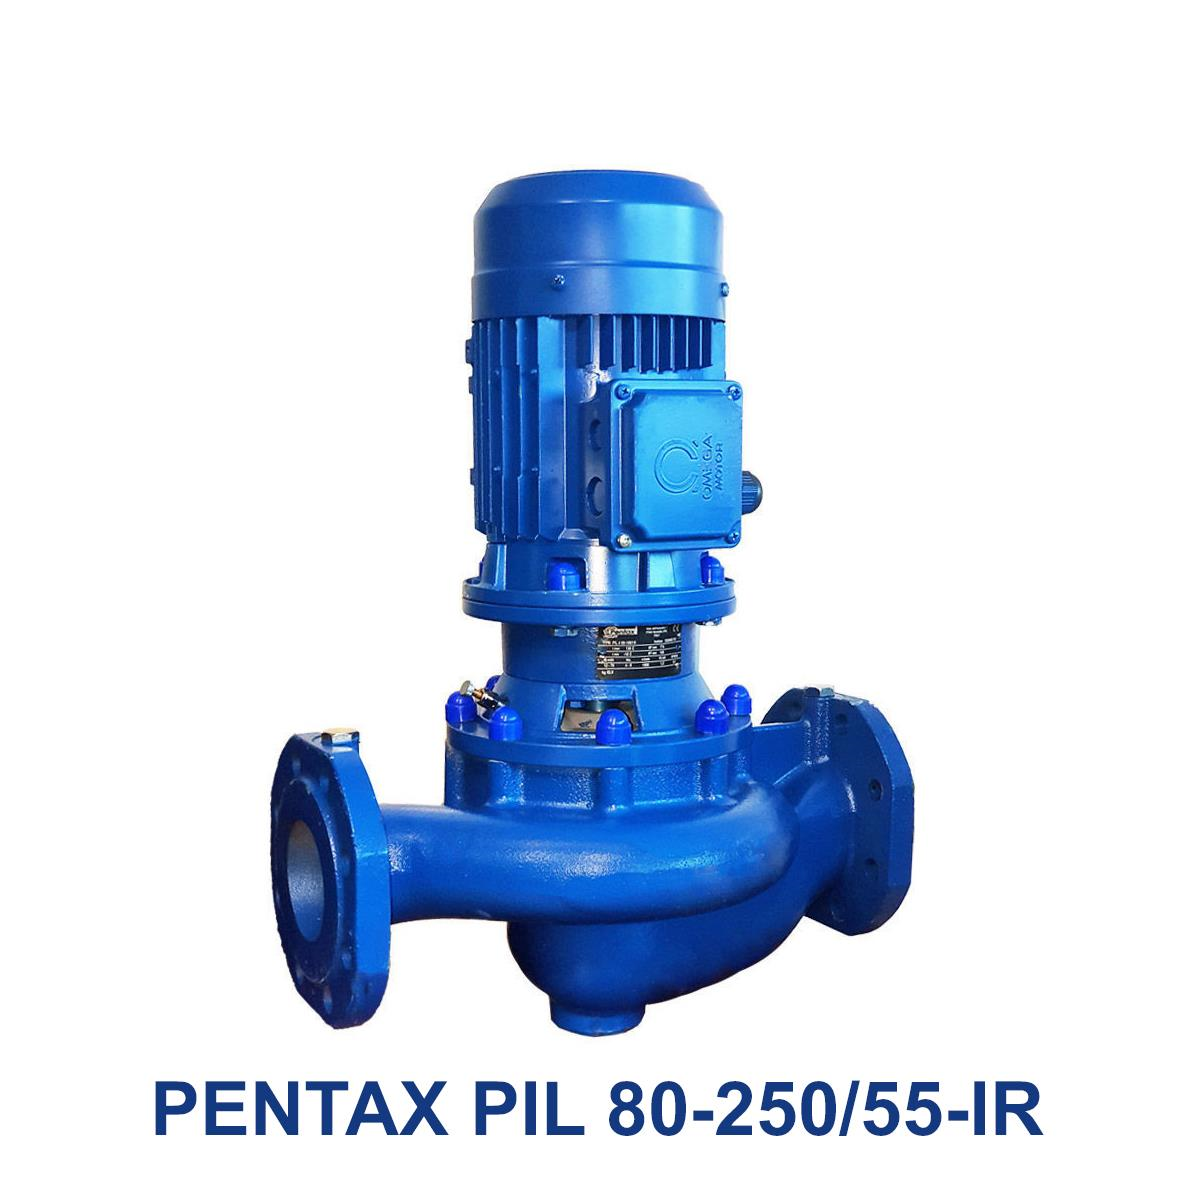 PENTAX-PIL-80-250-55-IR